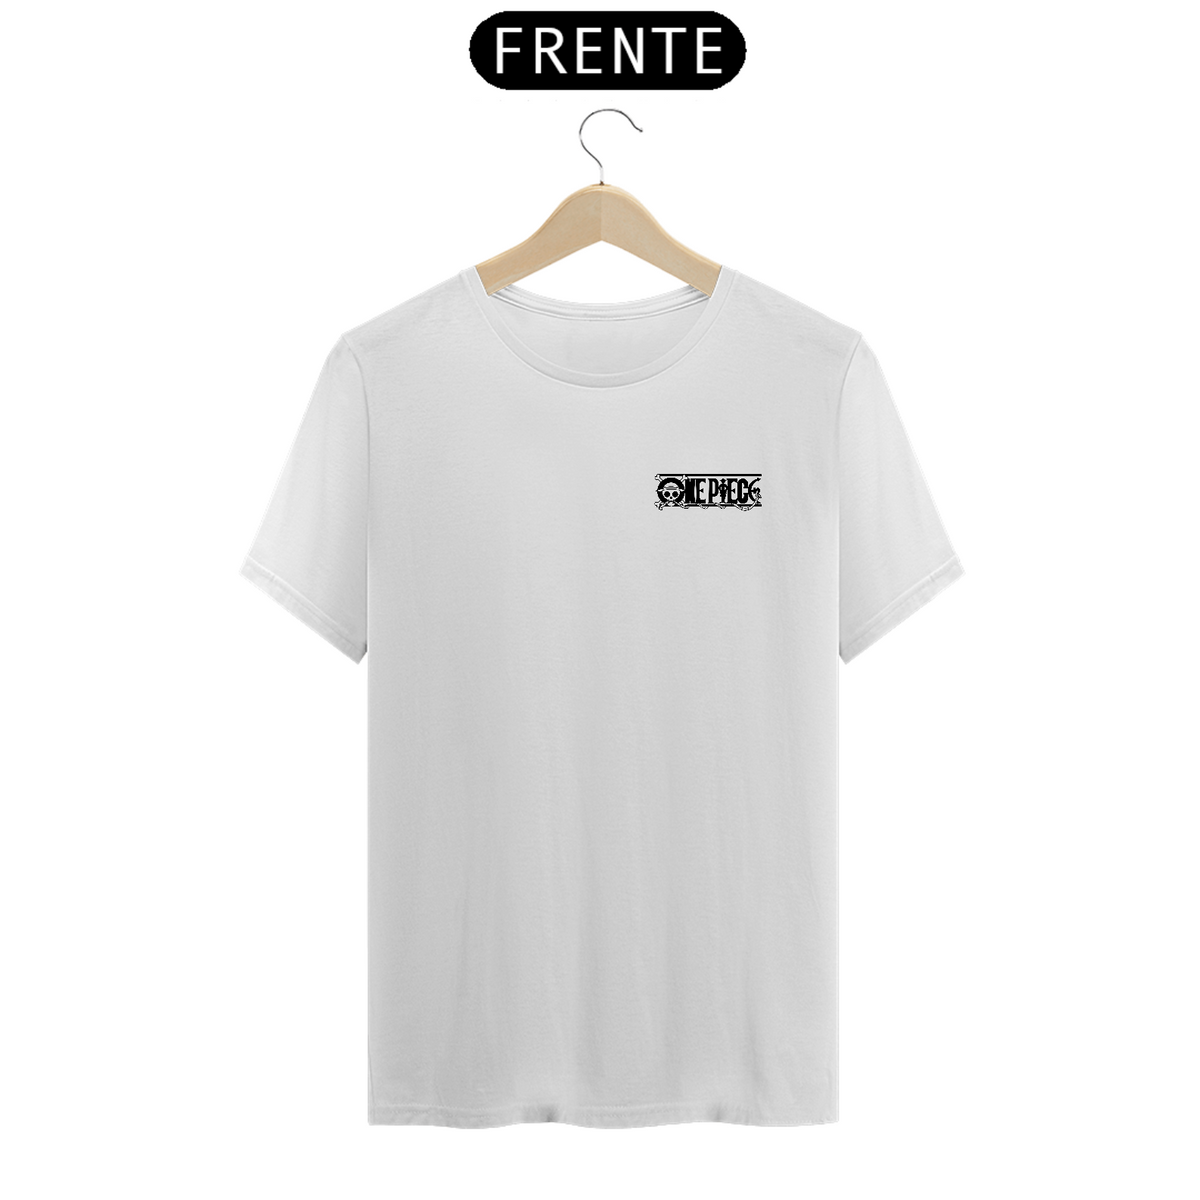 Nome do produto: Camiseta One Piece